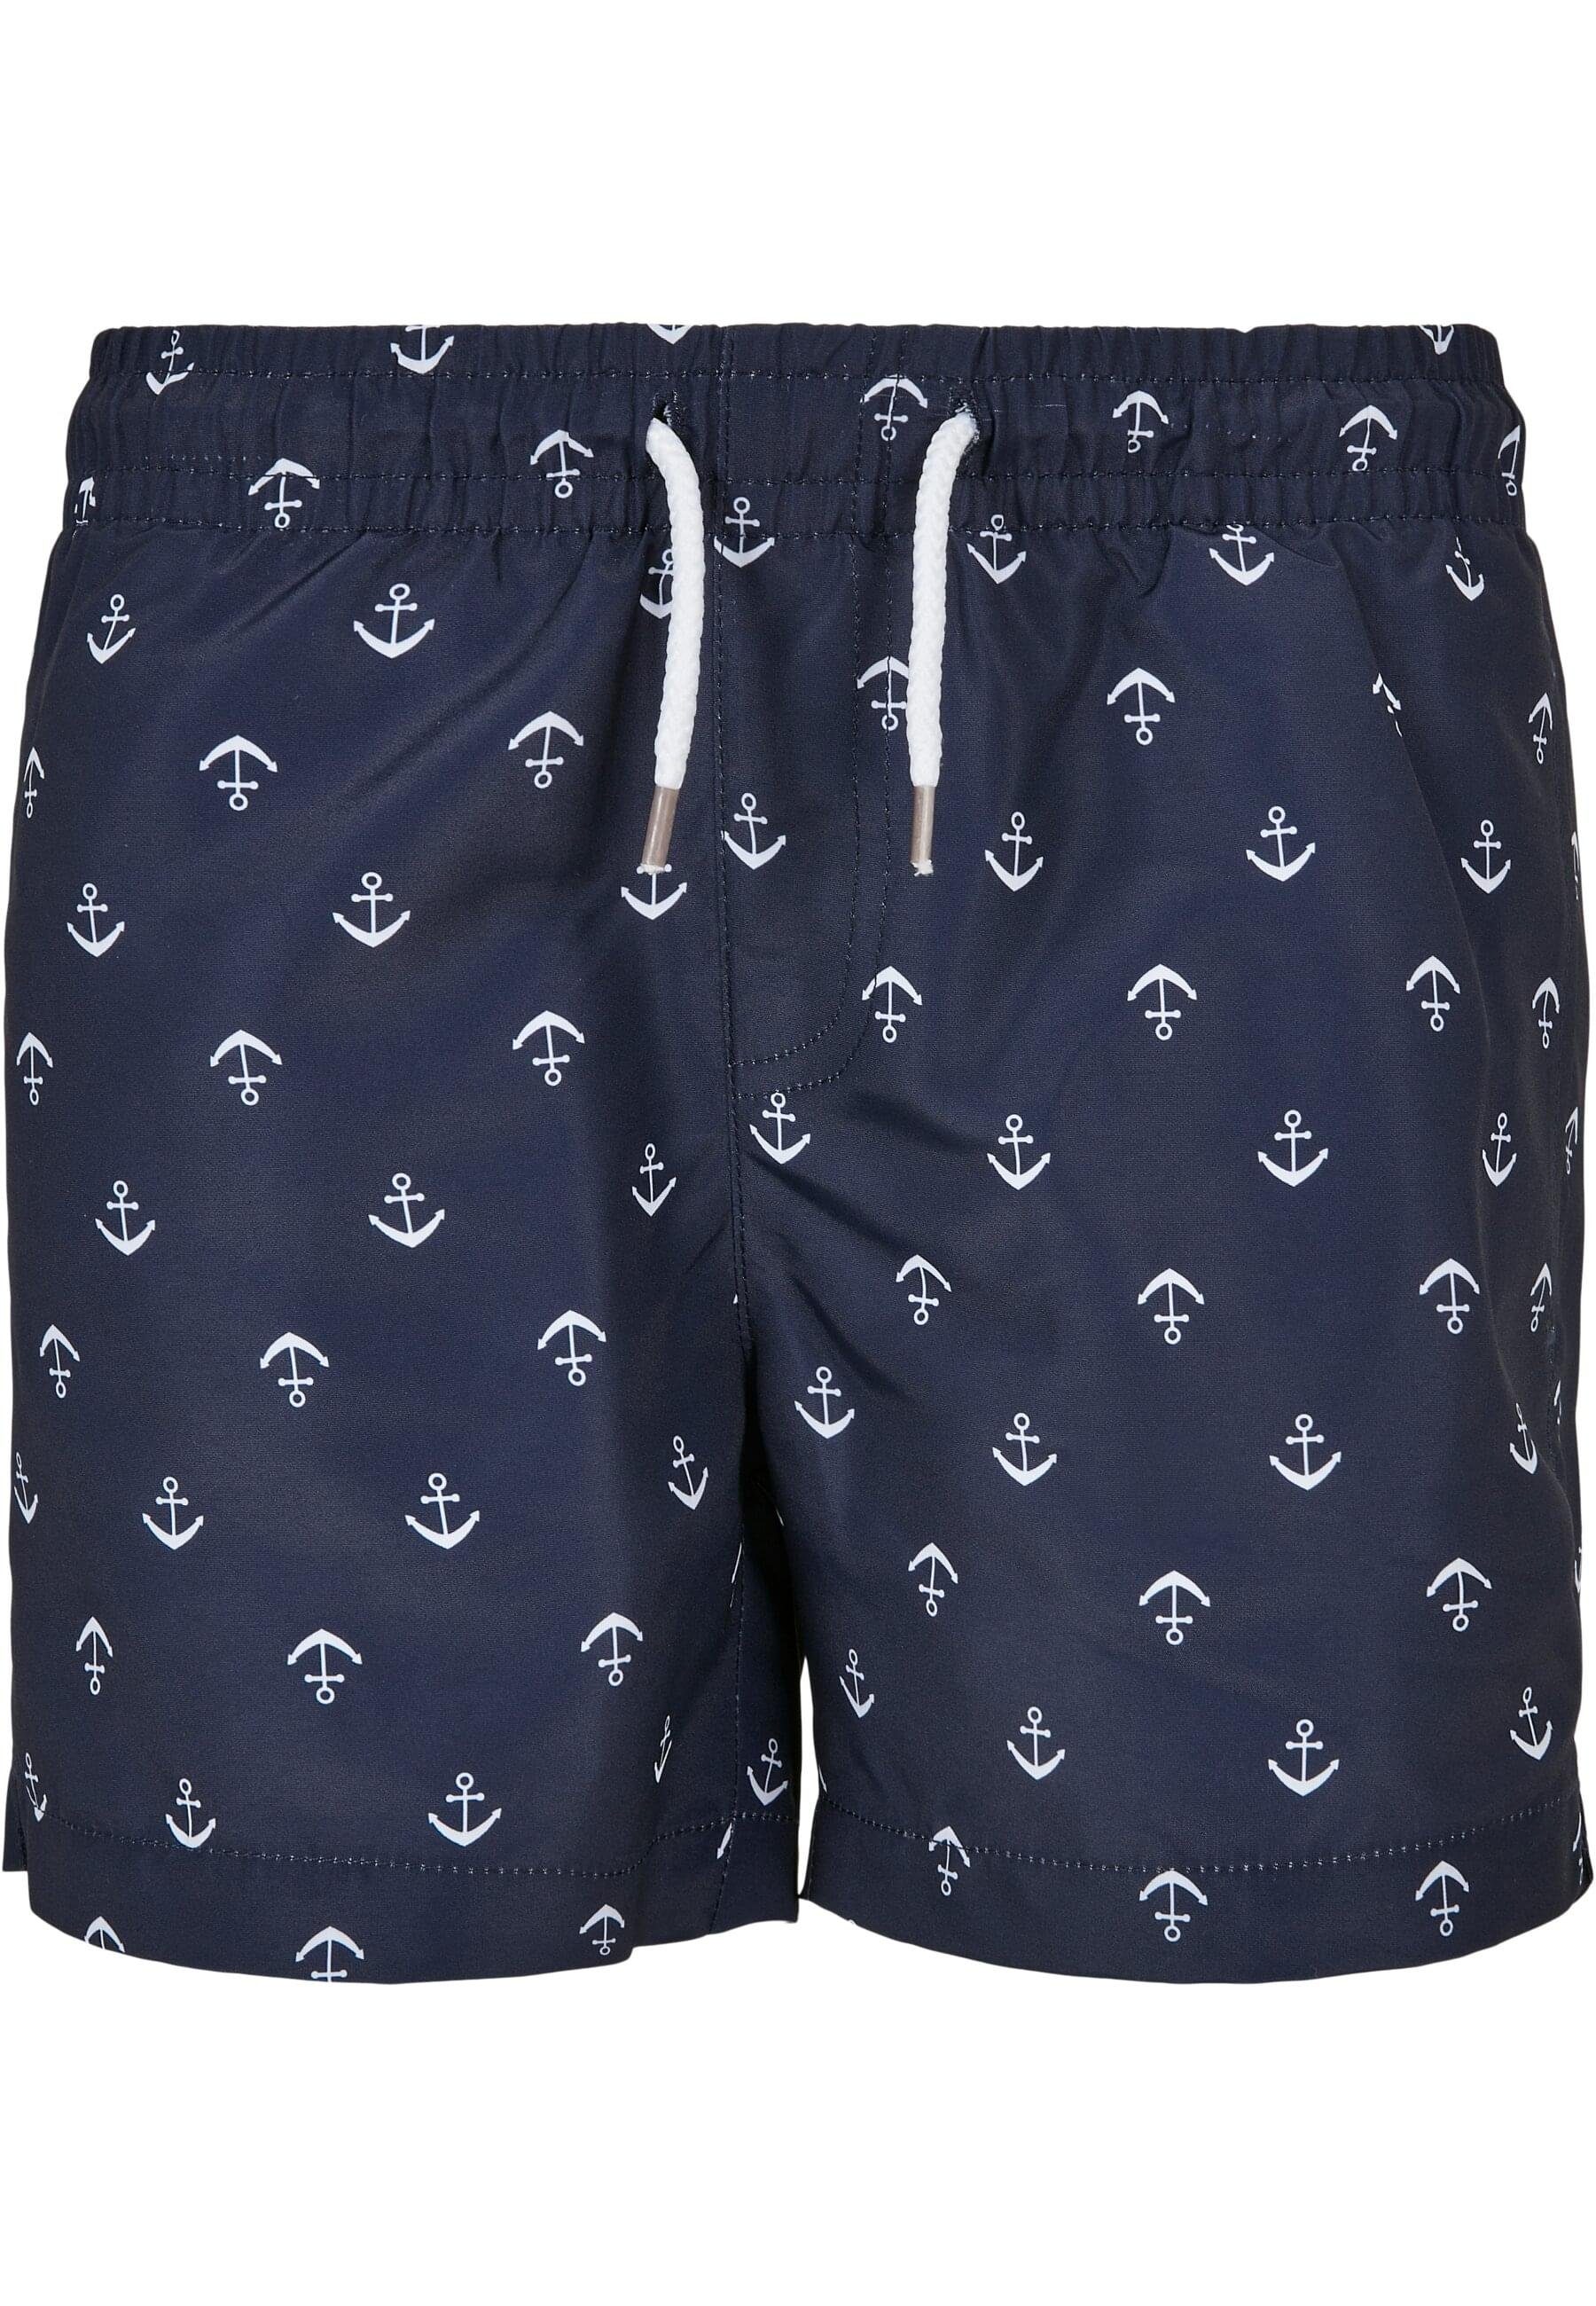 URBAN Shorts anchor/navy CLASSICS Boys Pattern Badeshorts Herren Swim